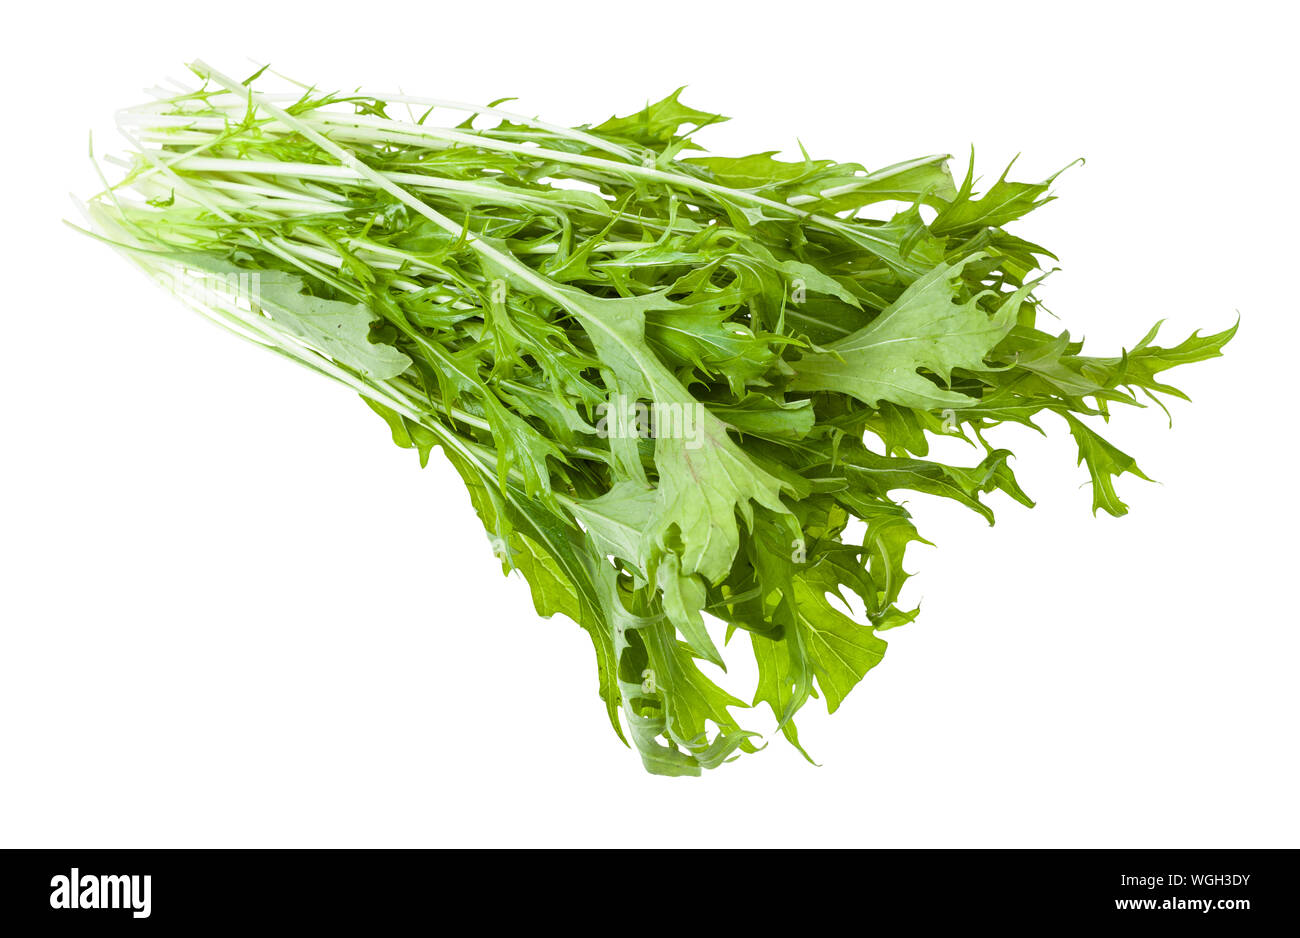 Bündel grün mizuna (Japanische senfgrüns) Pflanze isoliert auf weißem Hintergrund Stockfoto